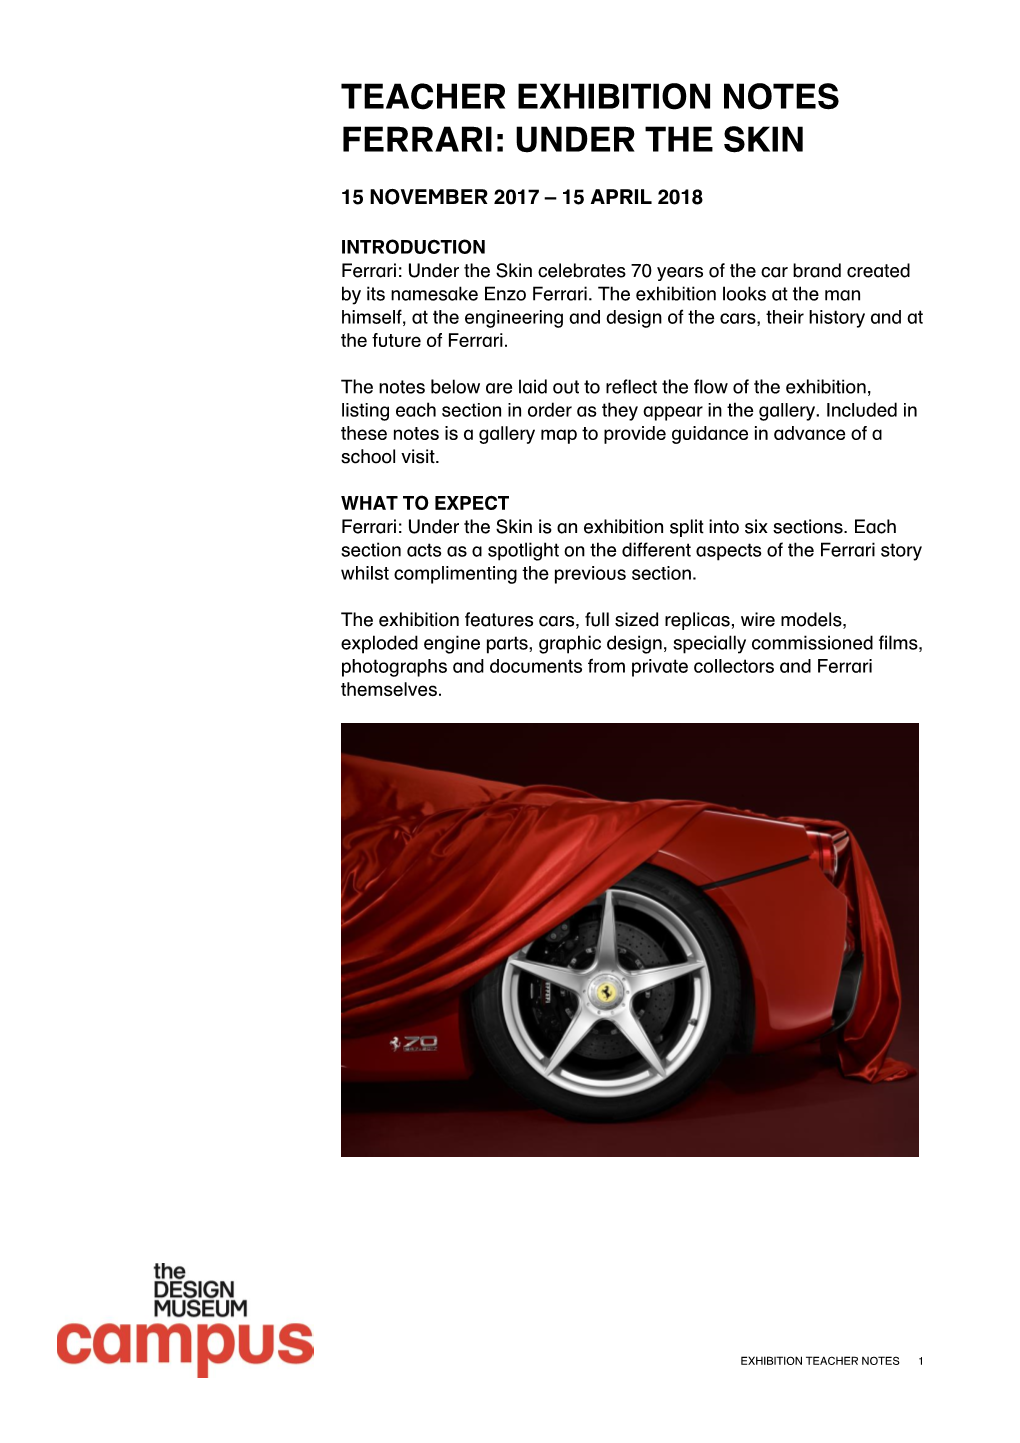 Teacher Exhibition Notes Ferrari: Under the Skin